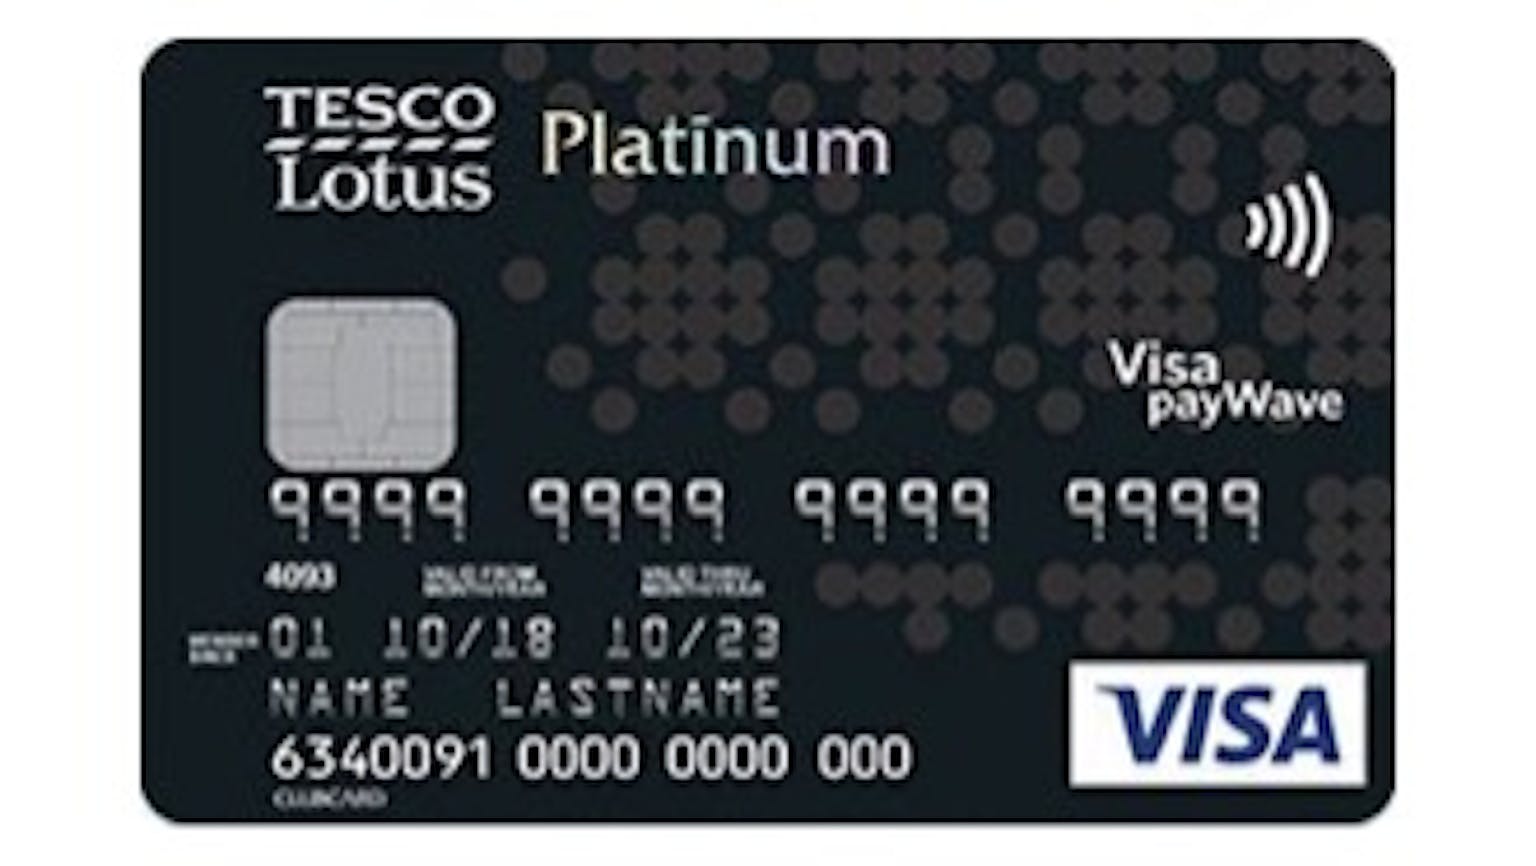 บัตรเครดิตเทสโก้ โลตัส วีซ่า แพลทินัม (เปลี่ยนเป็น บัตรเครดิตเทสโก้ โลตัส วีซ่า บิยอนด์)